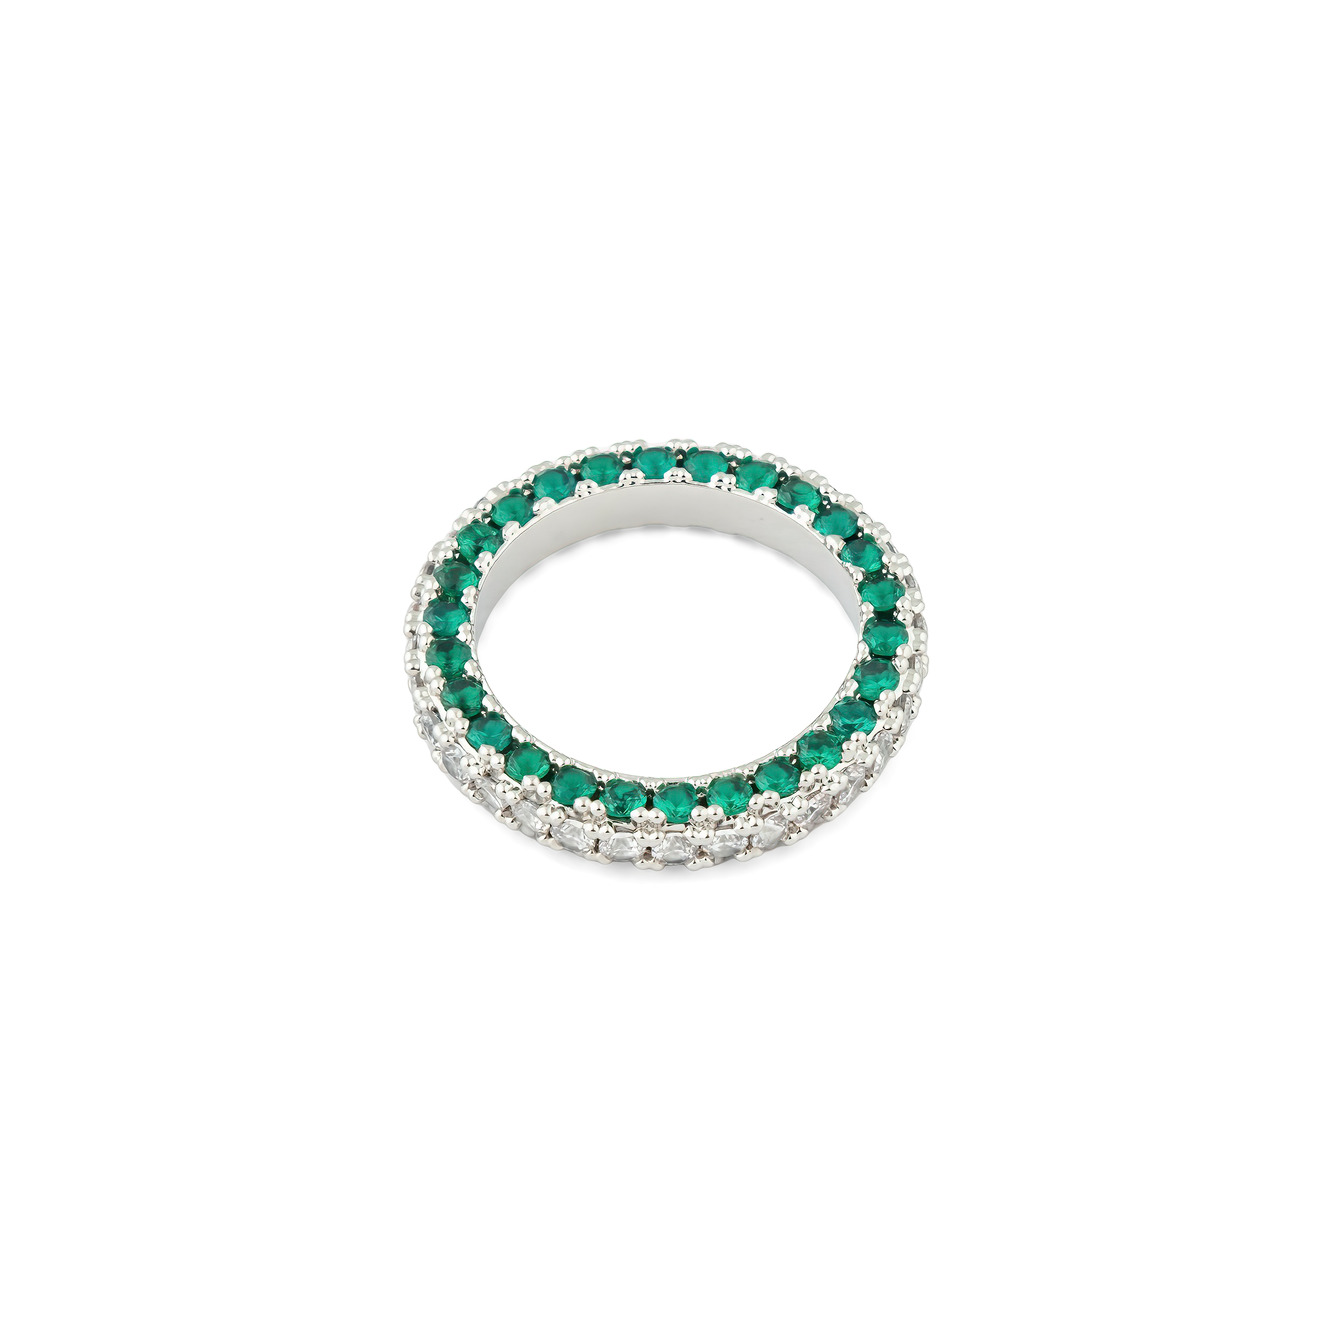 Herald Percy Серебристое кольцо с белыми и зелеными кристаллами herald percy серебристое колье с кристаллами в виде капель